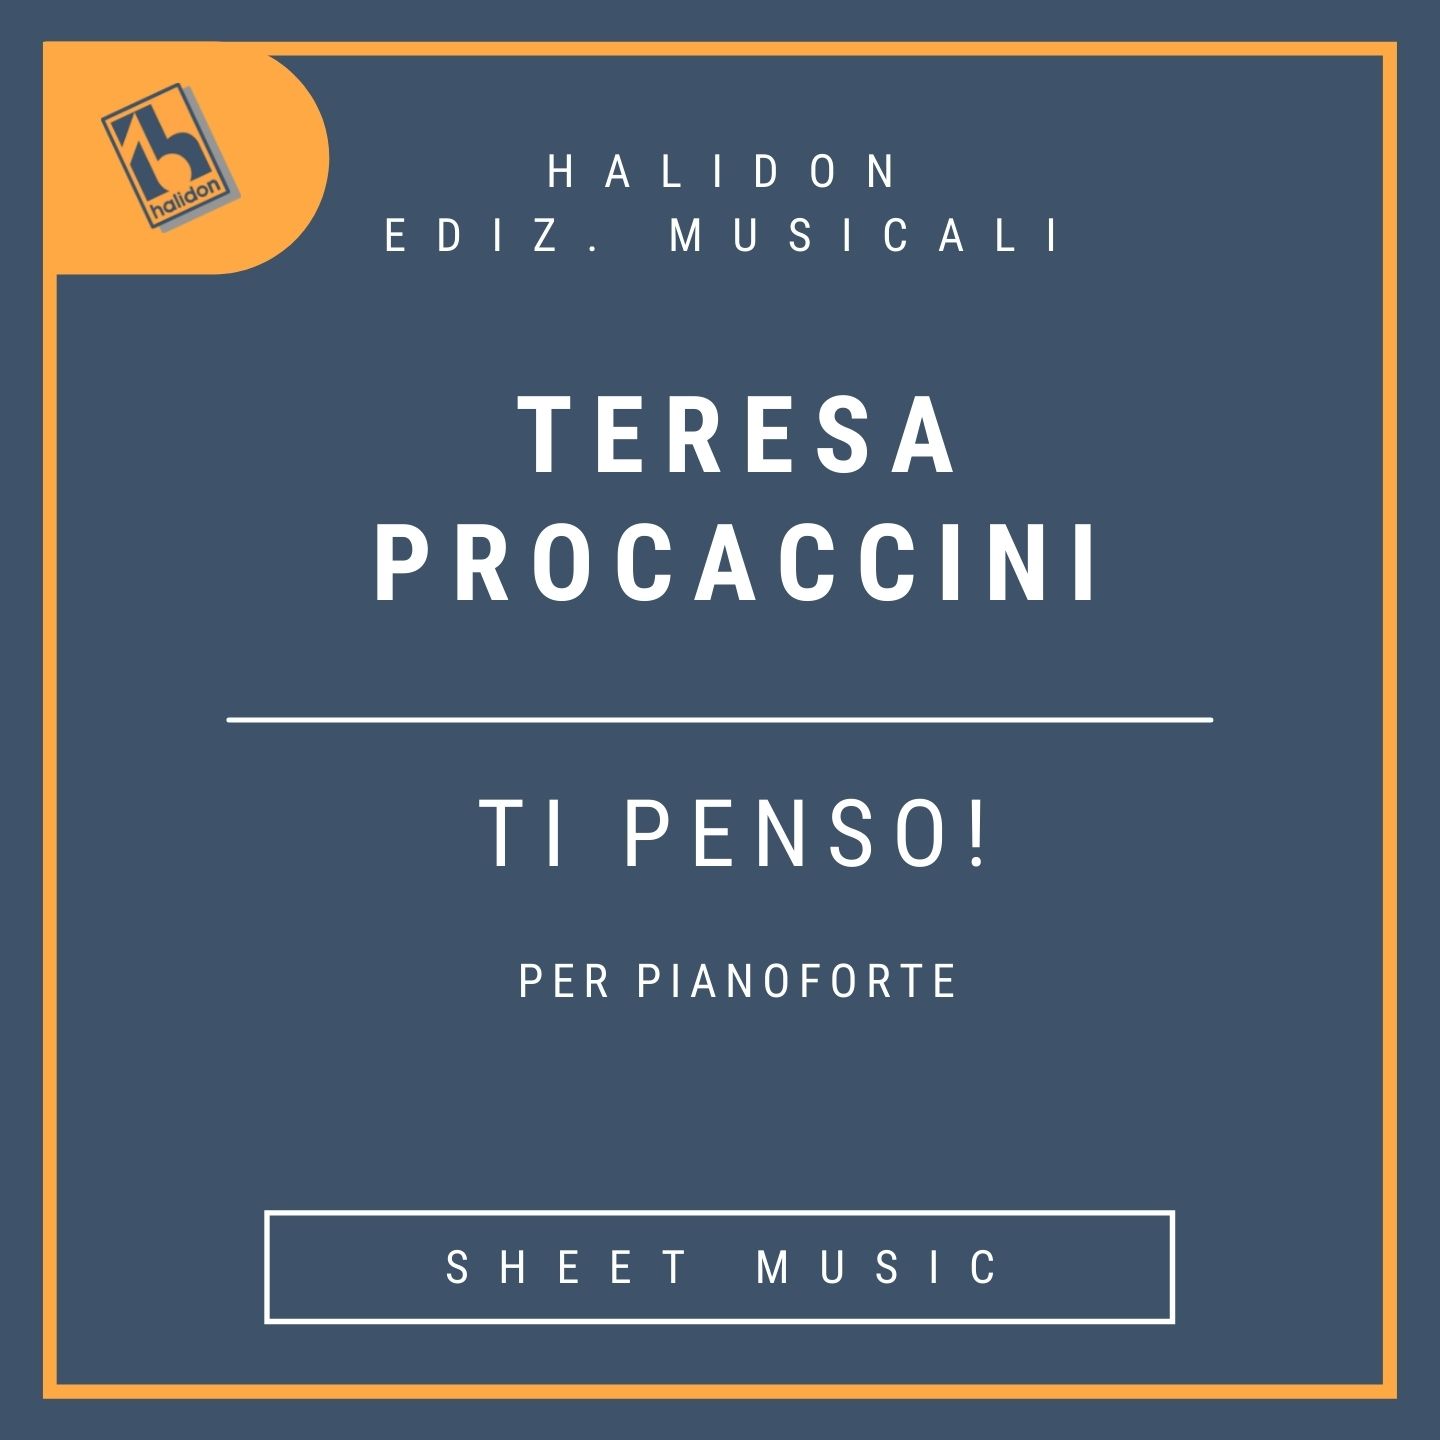 Teresa Procaccini - Ti penso!